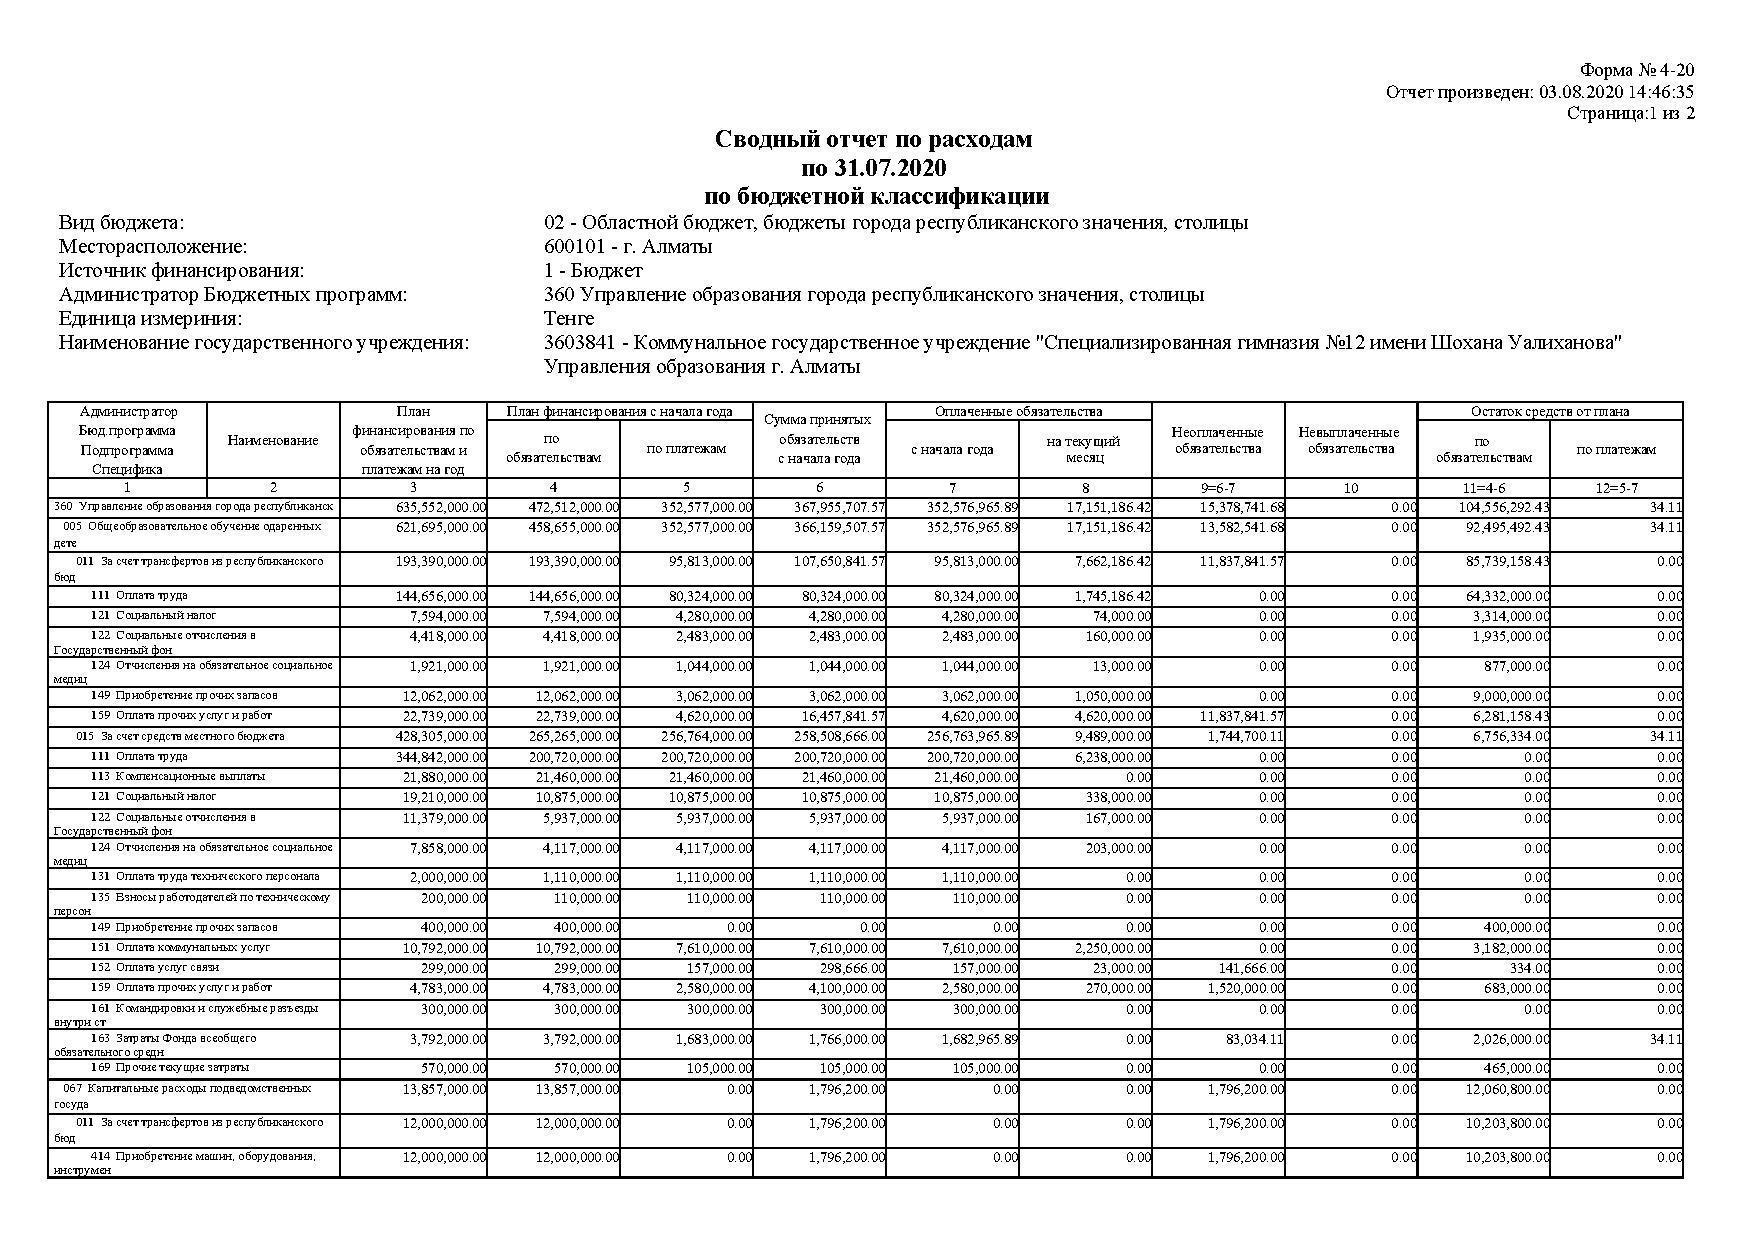 Cводный отчет по расходам по 31.07.2020